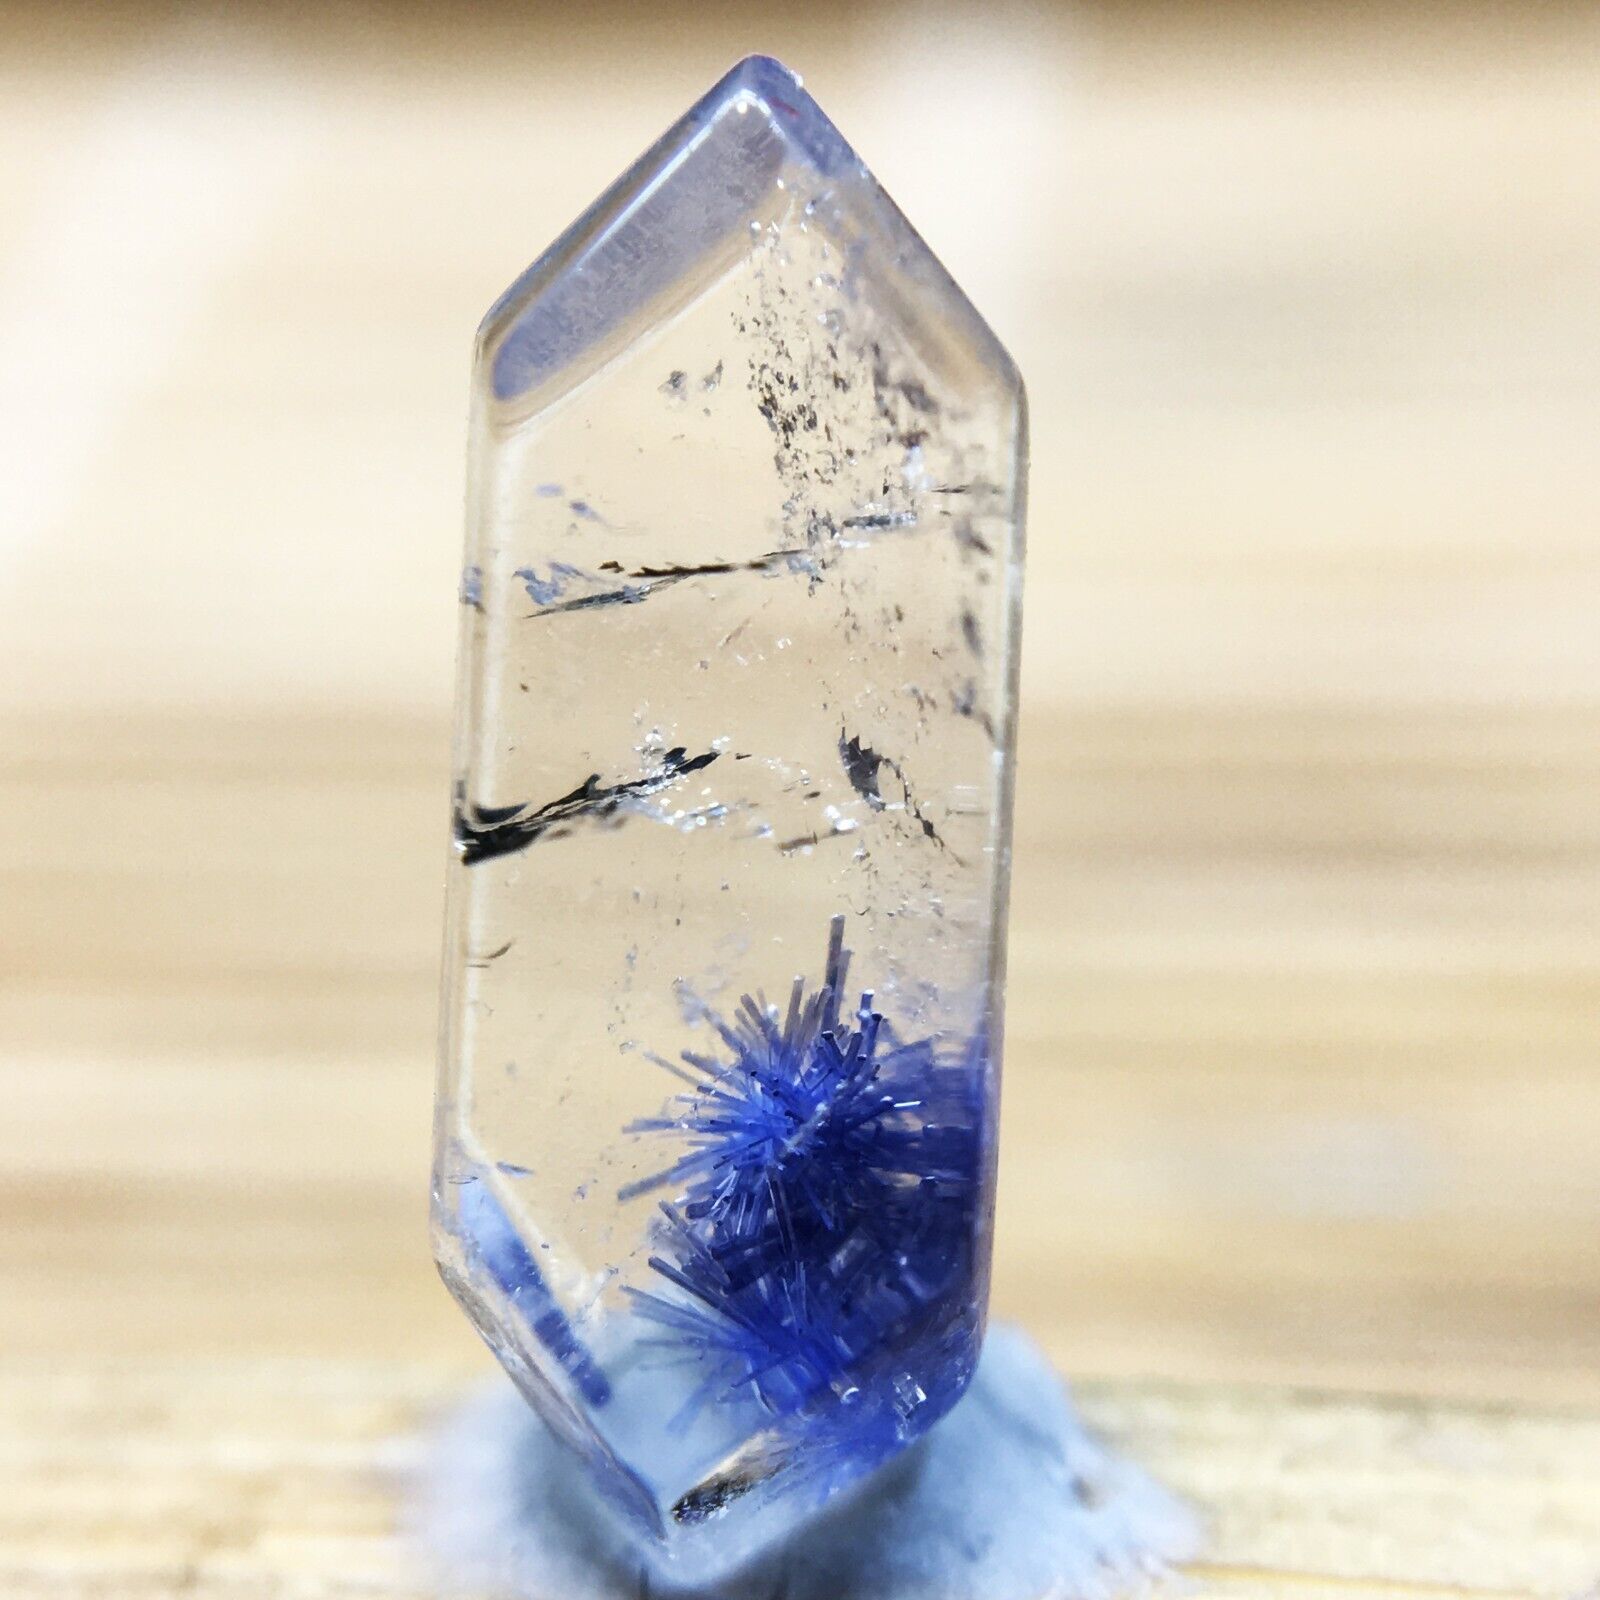 1.5Ct Very Rare NATURAL Beautiful Blue Dumortierite Quartz Crystal Specimen